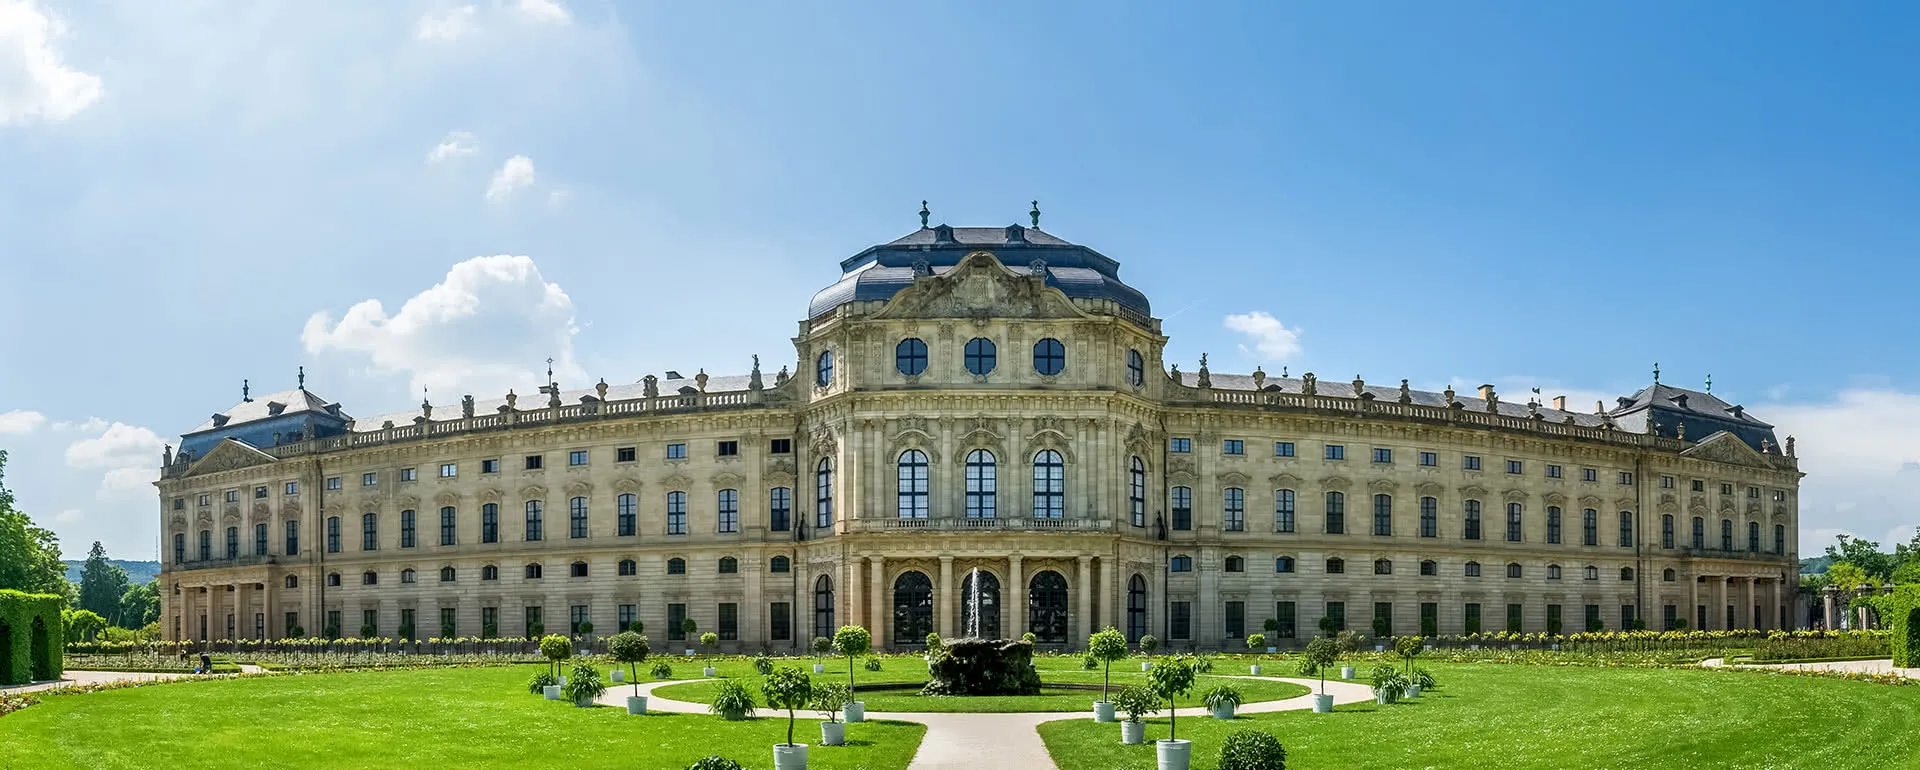 Würzburg panorama image